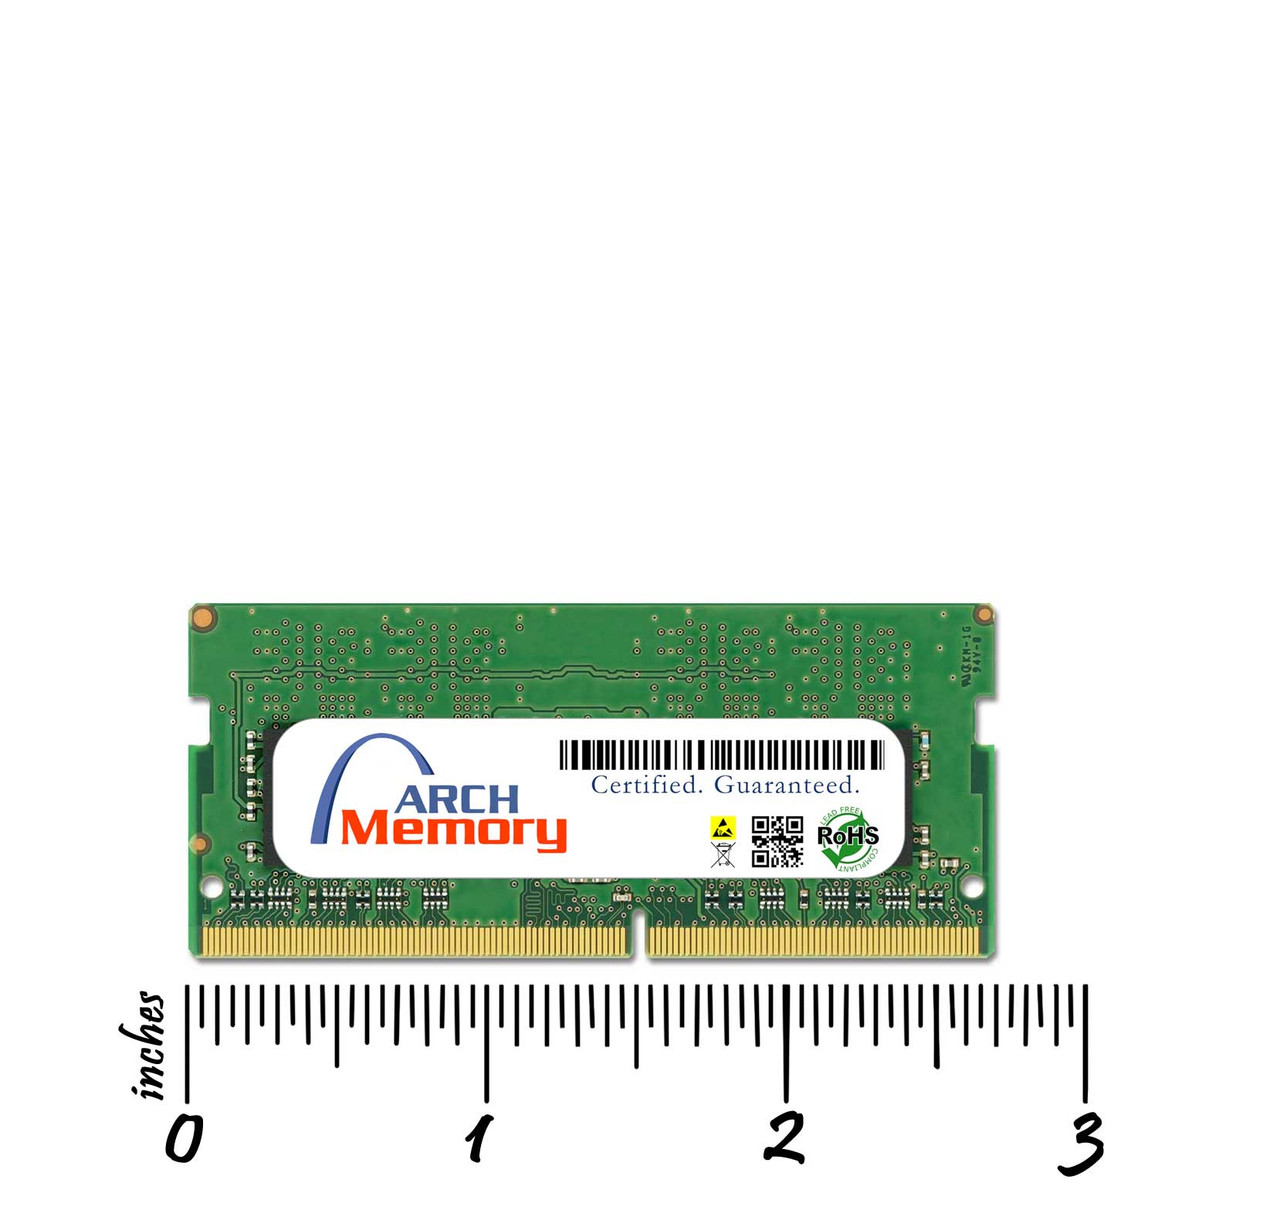 8GB Memory Dell Inspiron 15 3501 DDR4 RAM Upgrade Upgrade* D8GB3200SOr1b8-DMG06